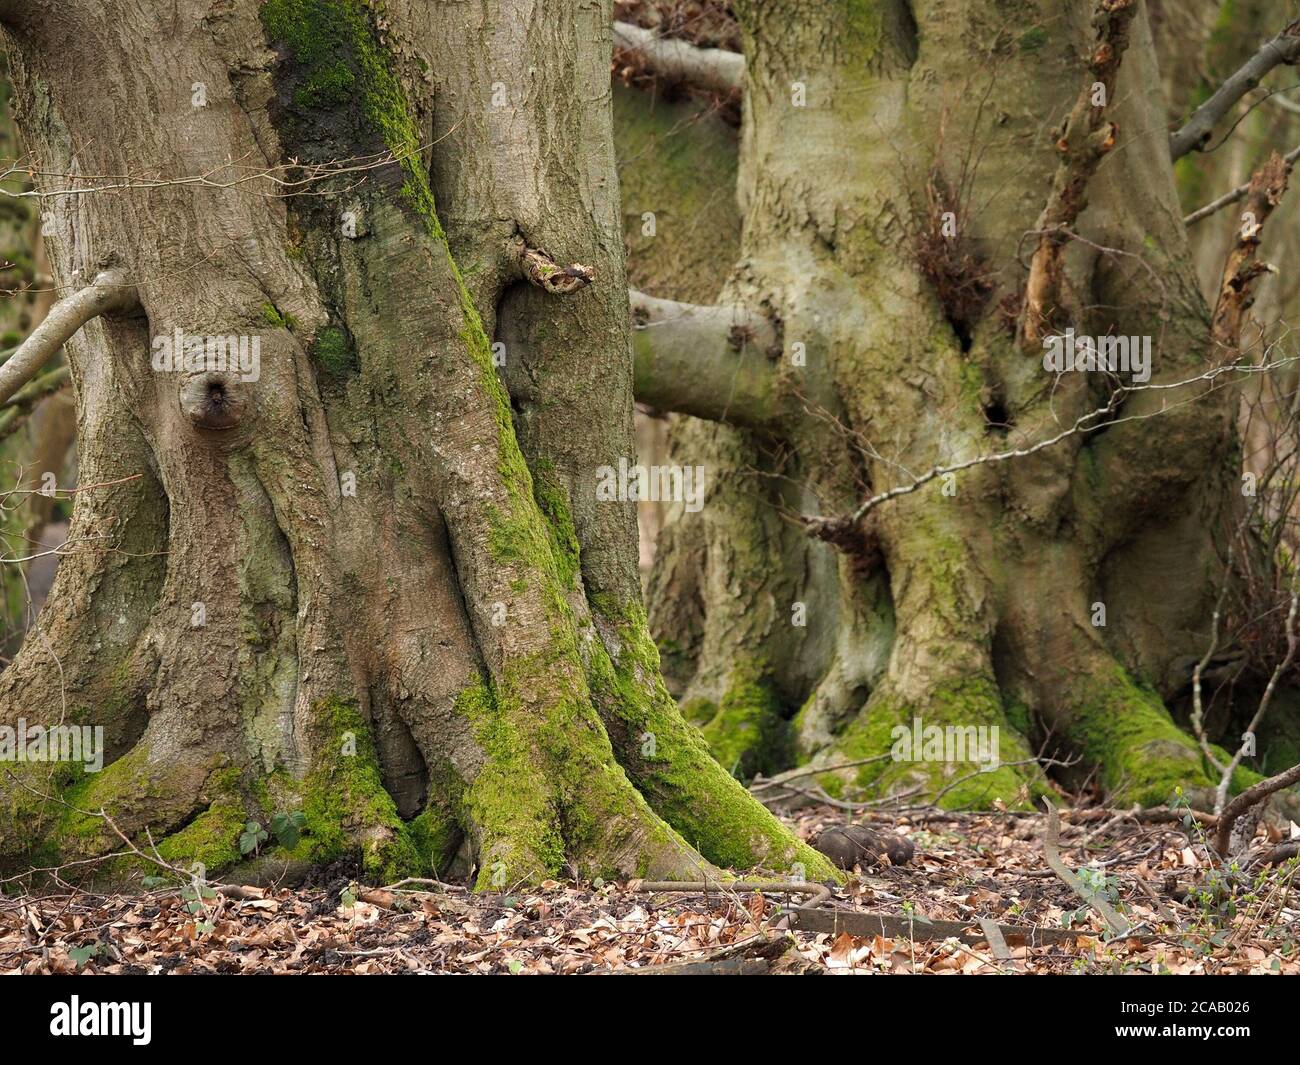 Tronchi gnarled di carpino maturo (Carpinus betulus) con caratteristica struttura di corteccia e colonizzato da muschio & alghe, Inghilterra, UK Foto Stock